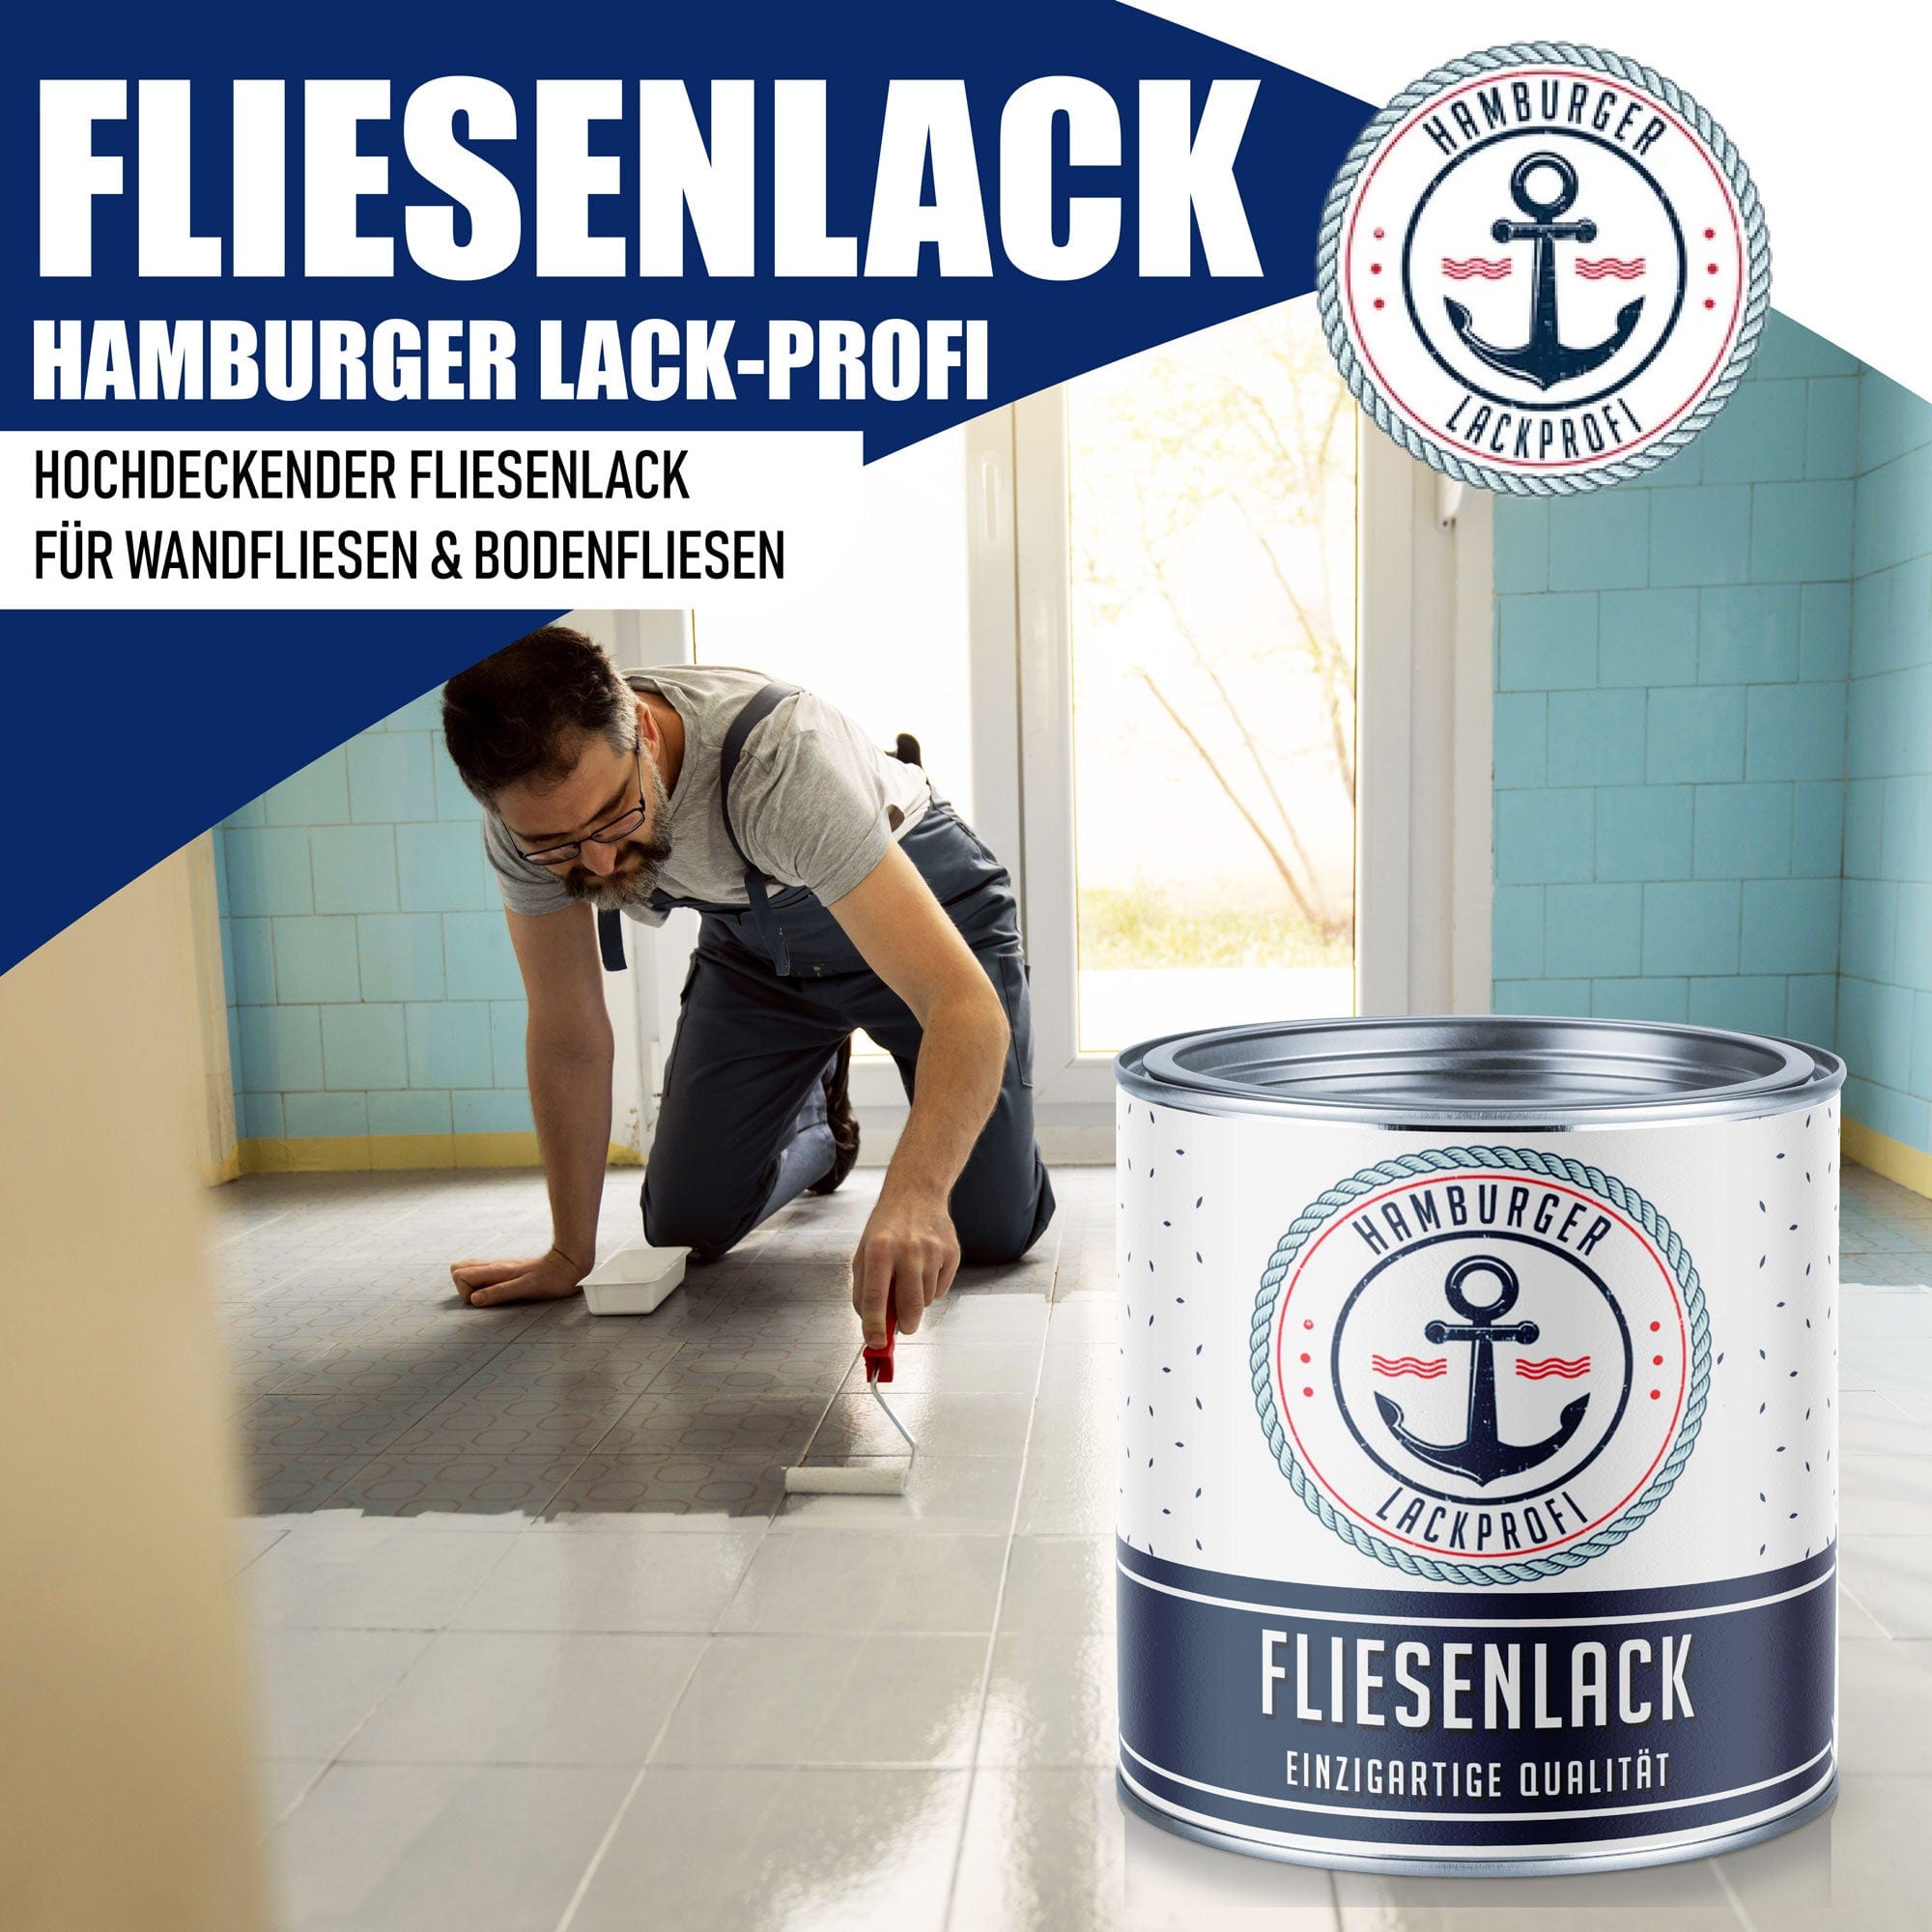 Hamburger Lack-Profi Lacke & Beschichtungen Hamburger Lack-Profi Fliesenlack Lackierset (X300) & Verdünnung (1 L) - 30% Sparangebot